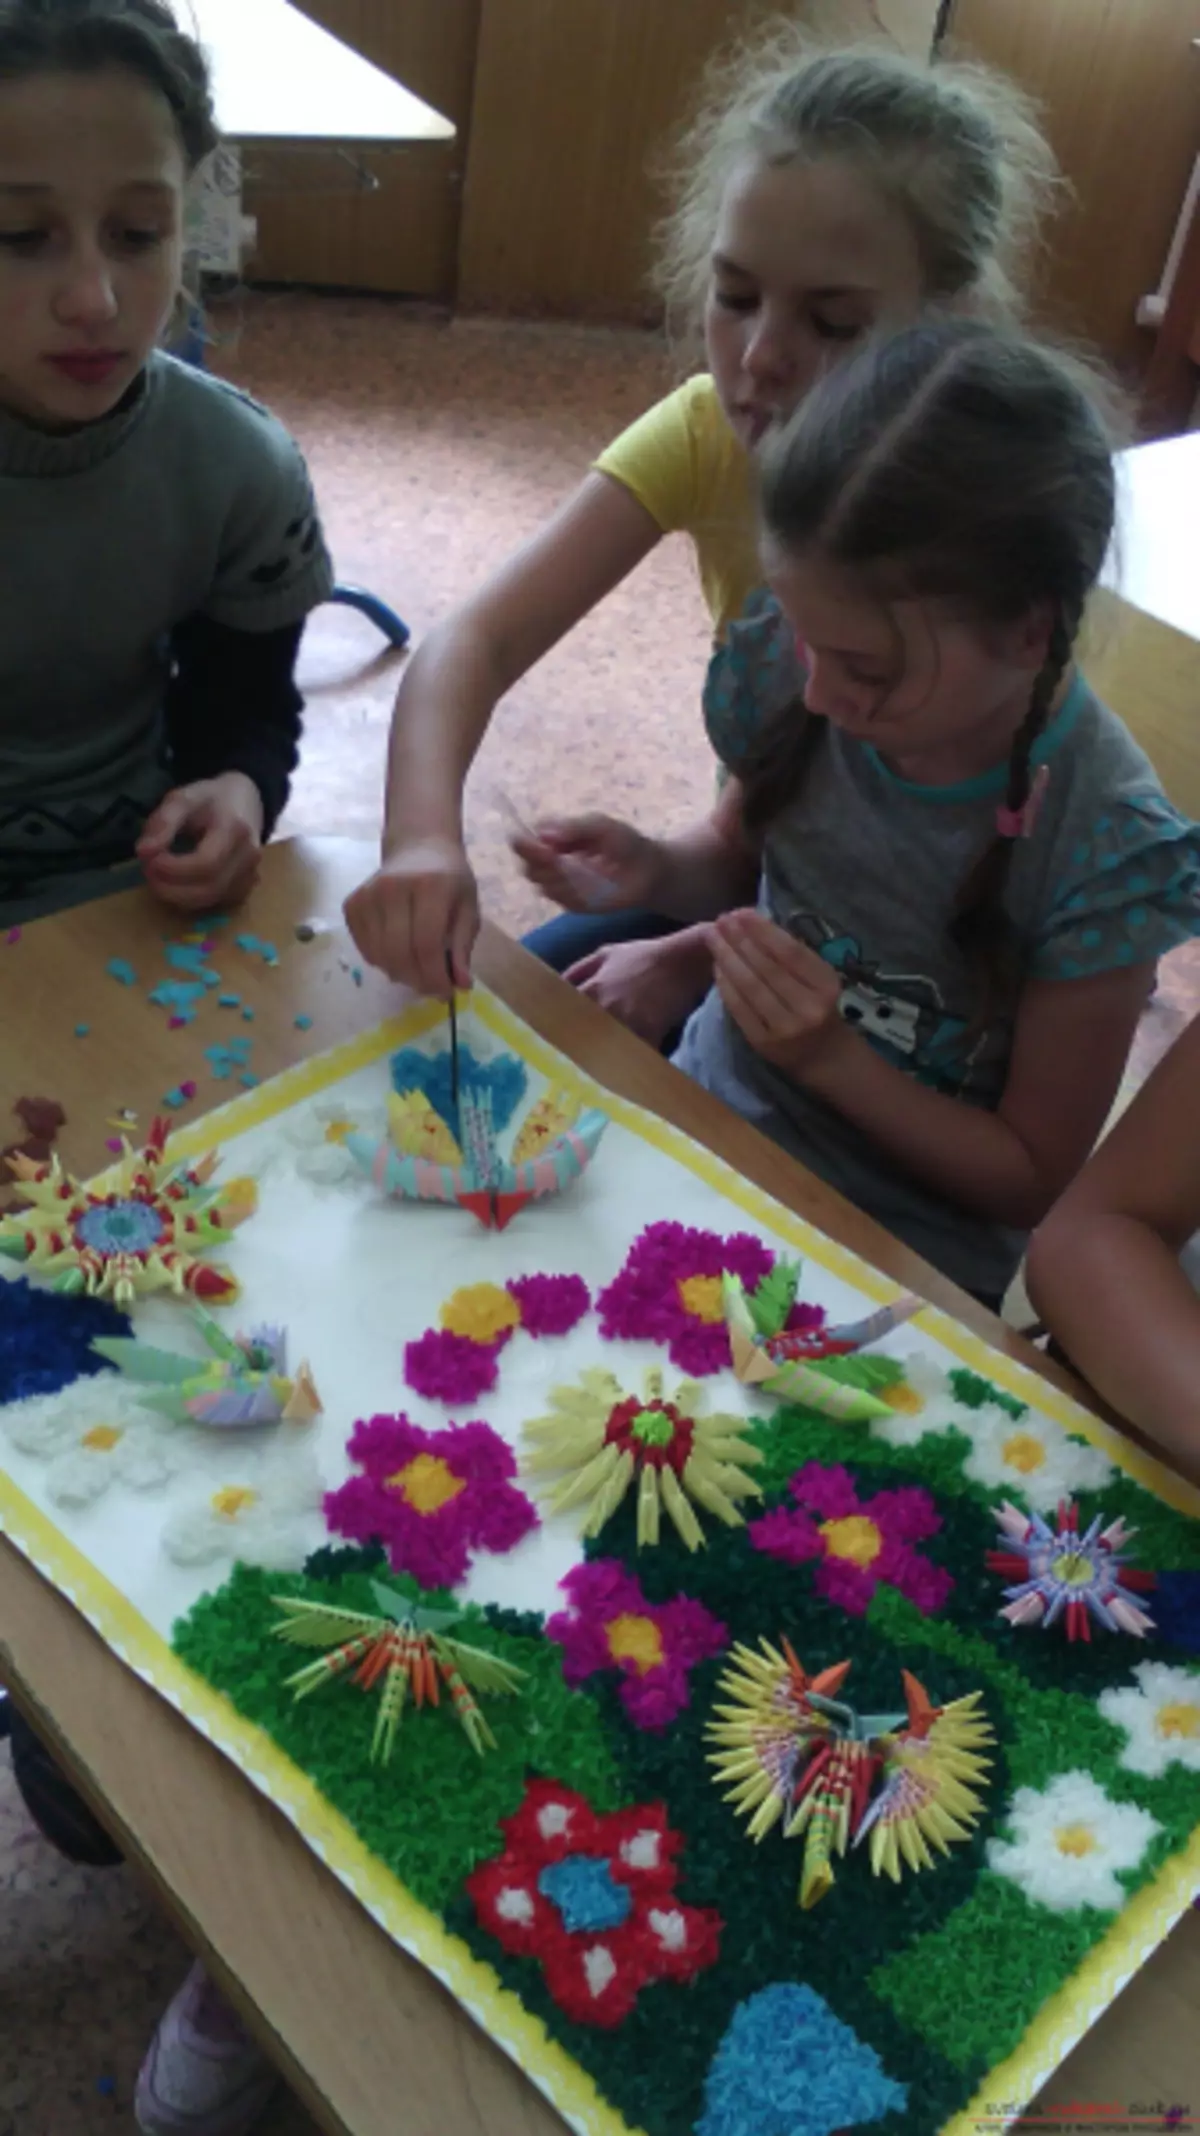 Origami სქემები მოდულებიდან რუსულ ენაზე: მარტივი გაკვეთილები დამწყებთათვის